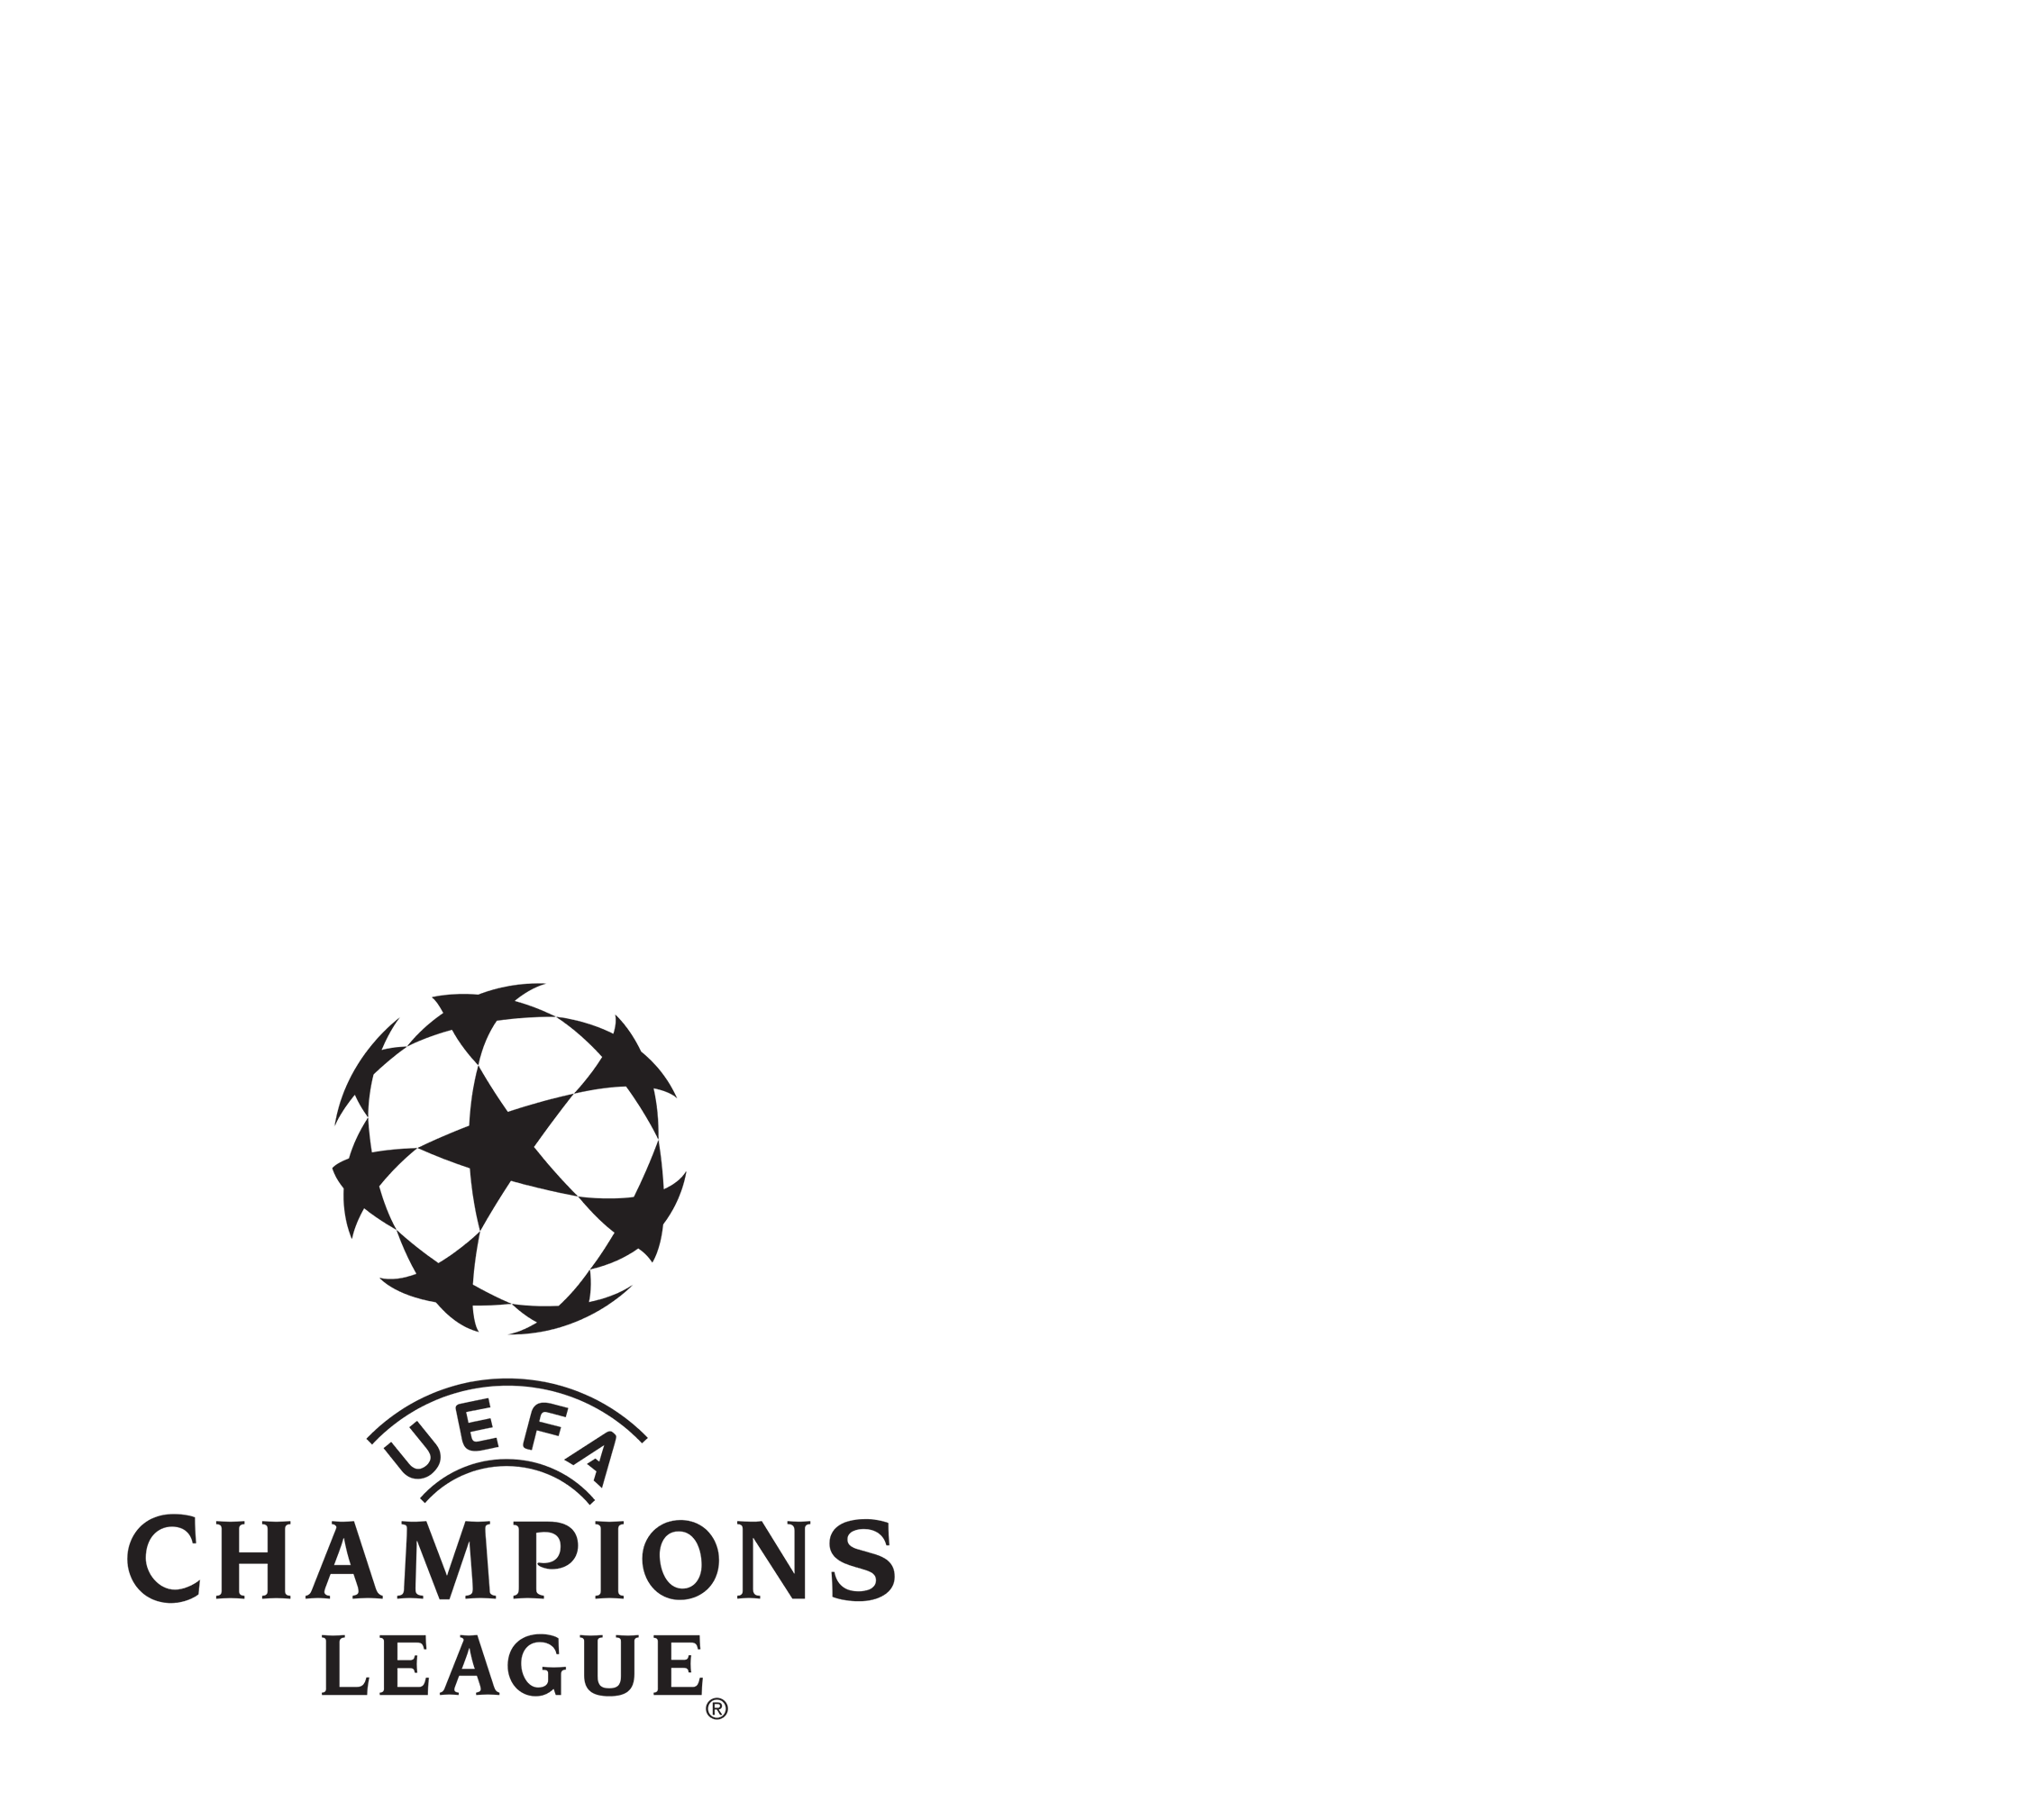 Champions League 2021/22